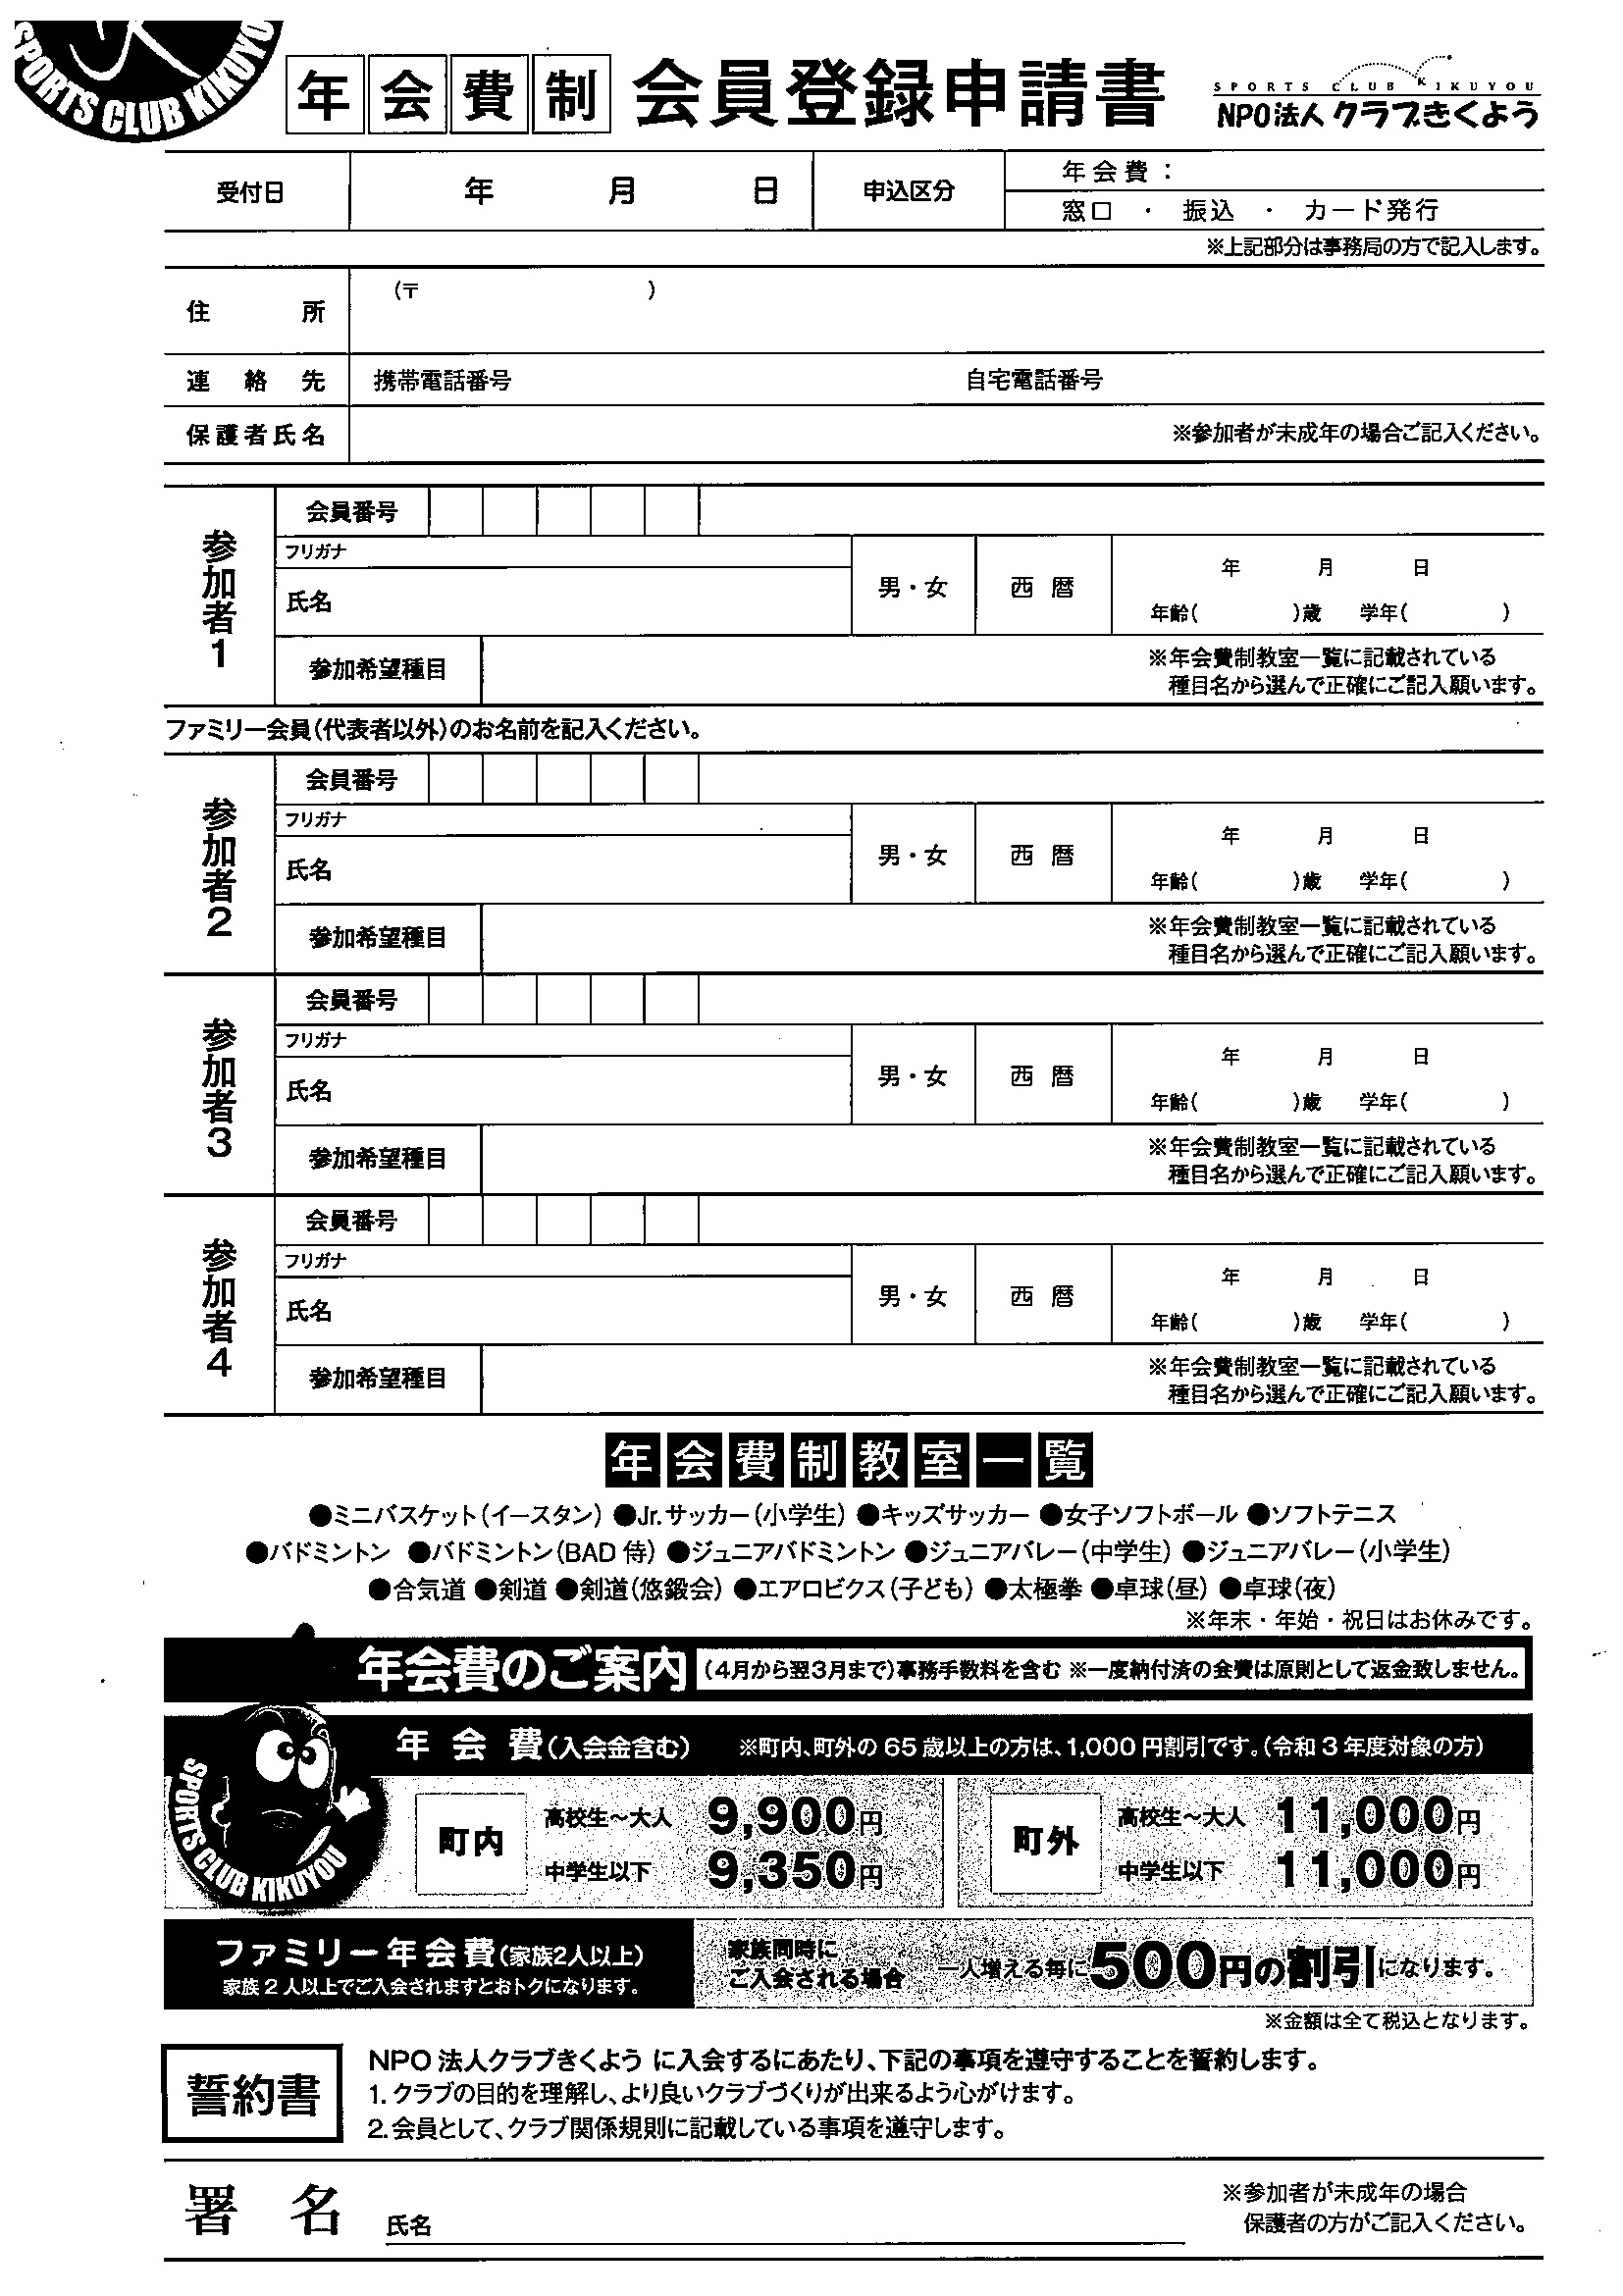 スポーツクラブ登録申請書(月謝制)